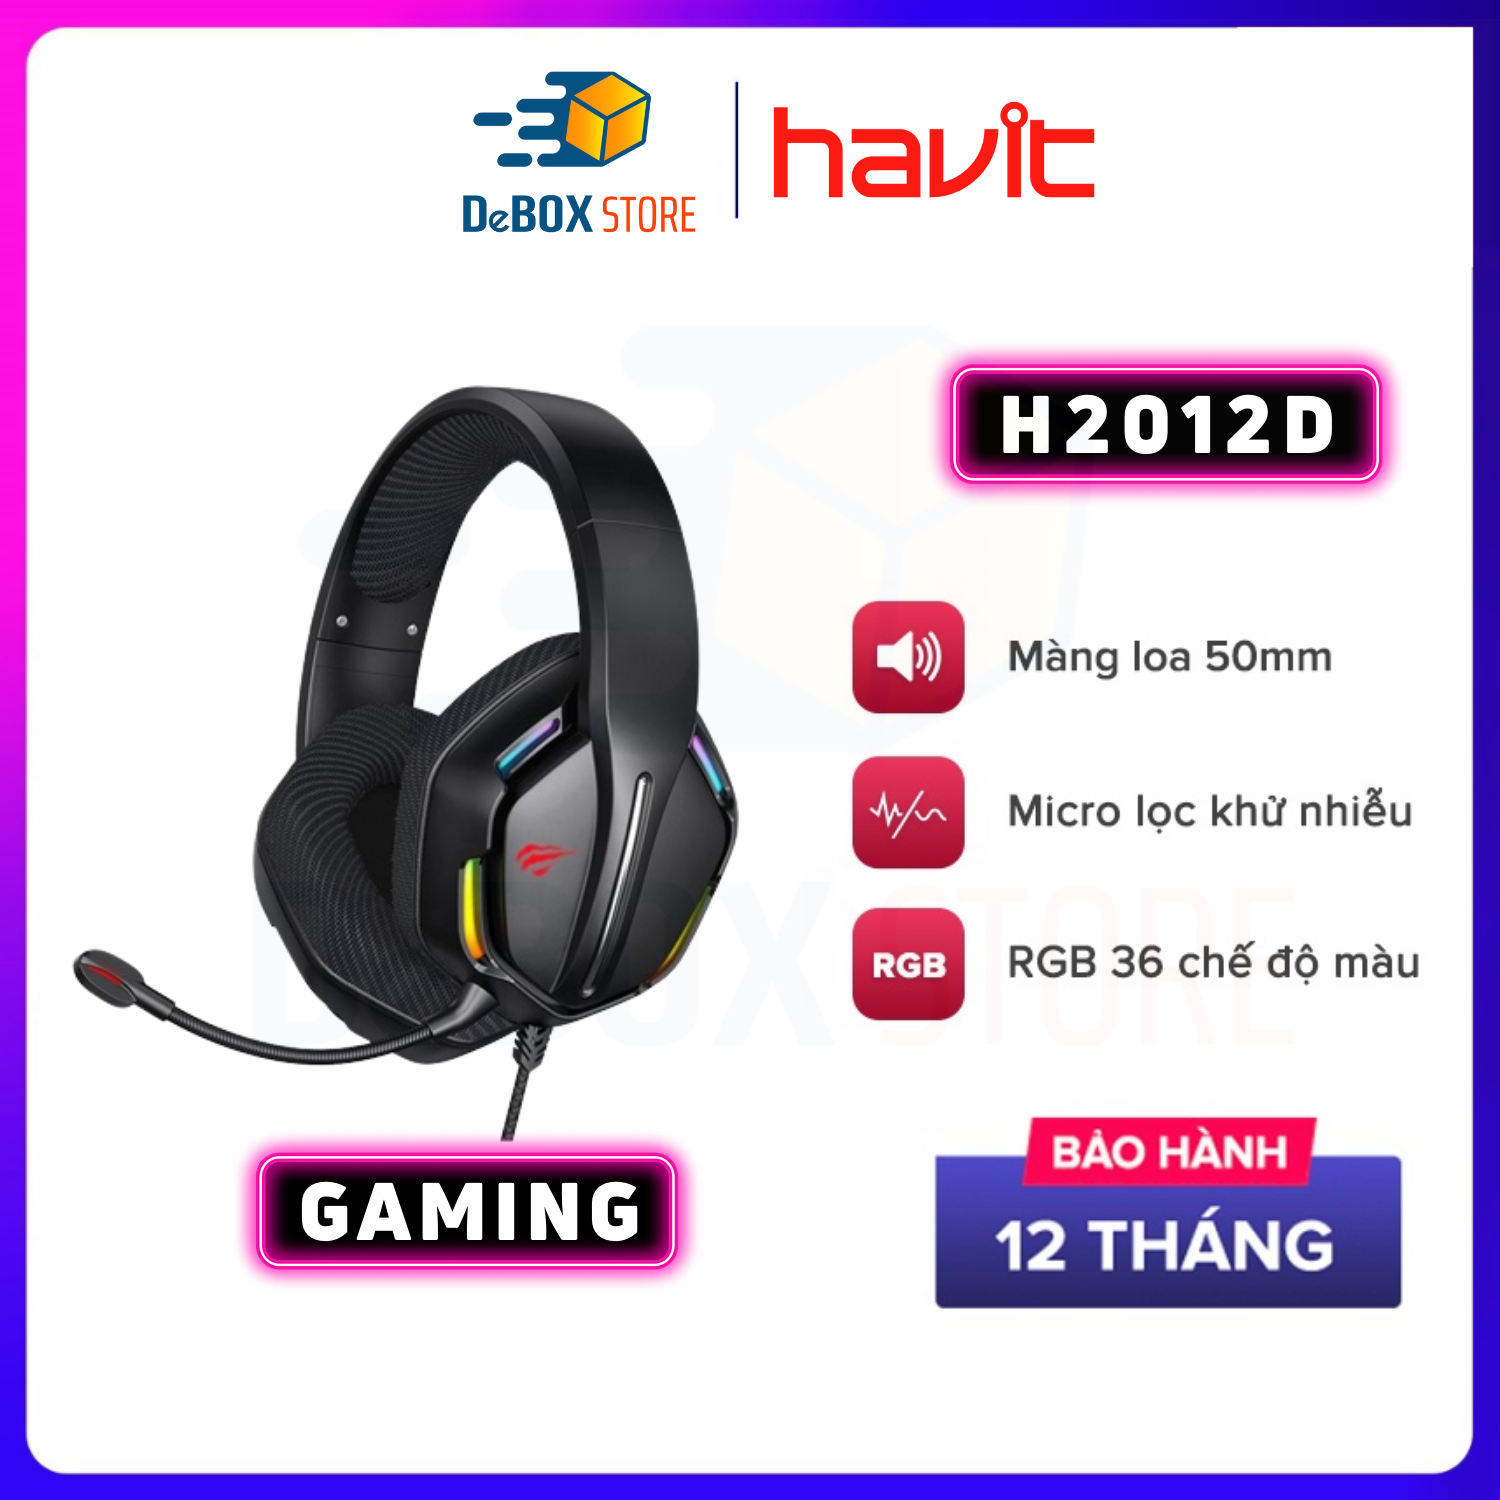 Tai Nghe Chơi Gaming Headphone HAVIT H2012D, Driver 50mm, Đèn RGB 36 Chế Độ Màu, Thiết kế oversize, Headband linh hoạt, Mic Khử Ồn - Chính Hãng Bảo Hành 12 Tháng thumbnail